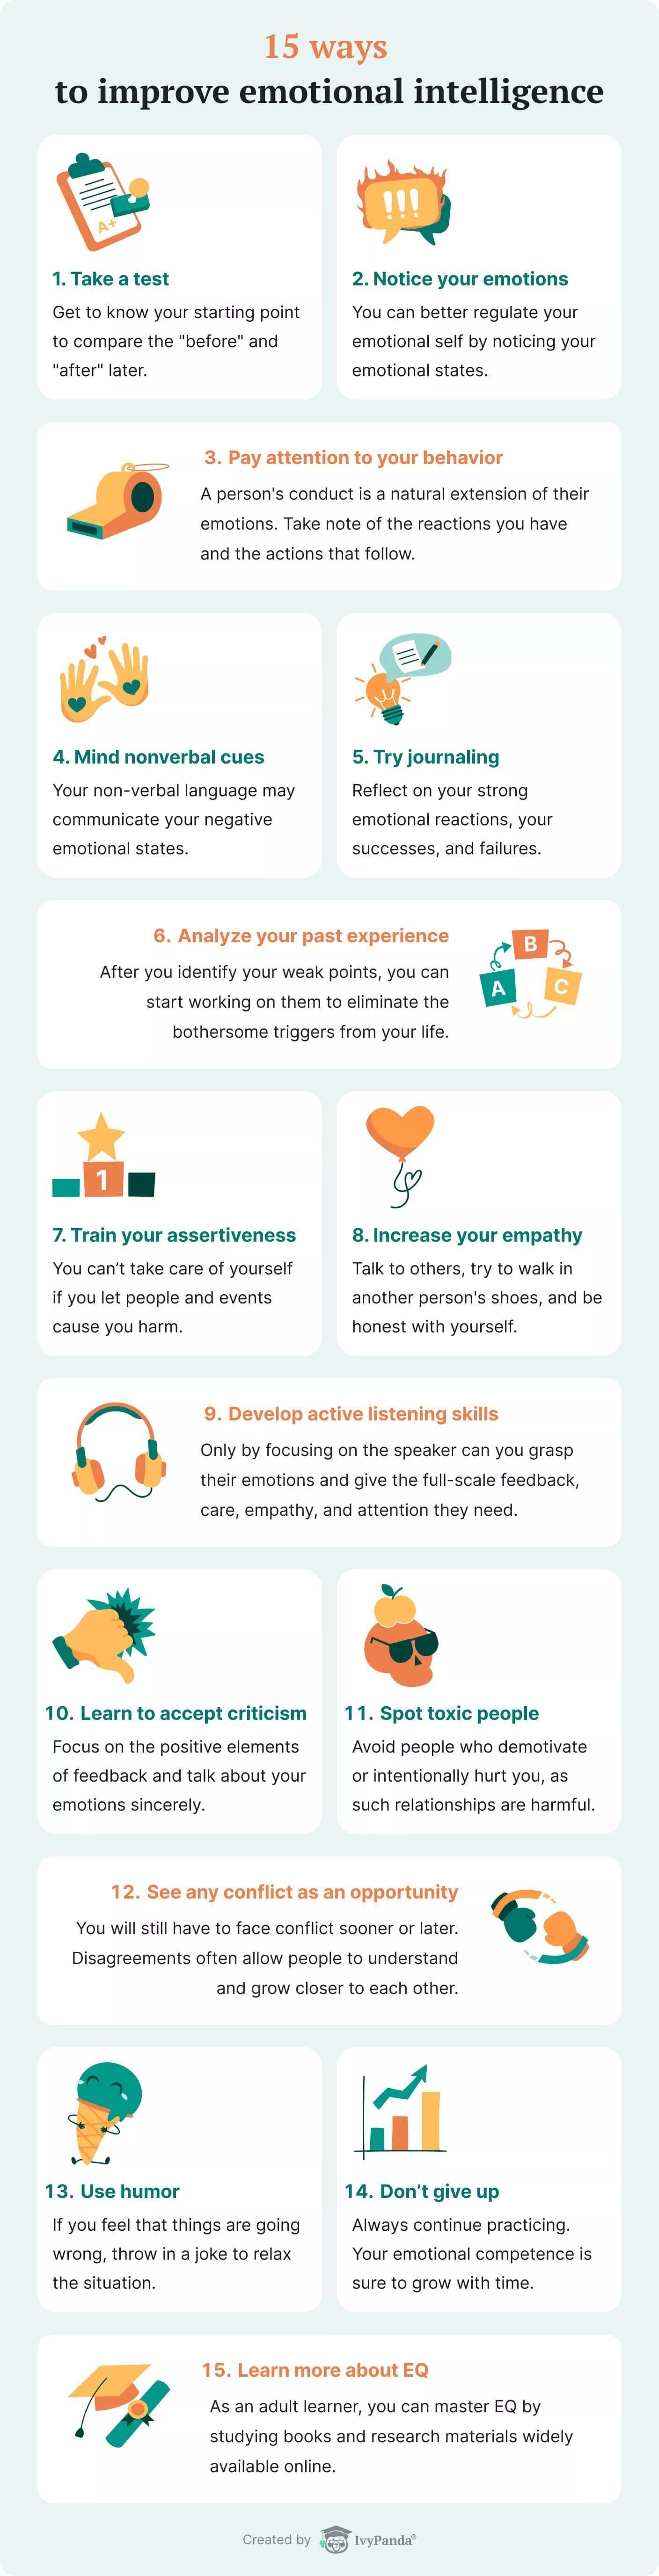 15 Ways To Improve Emotional Intelligence